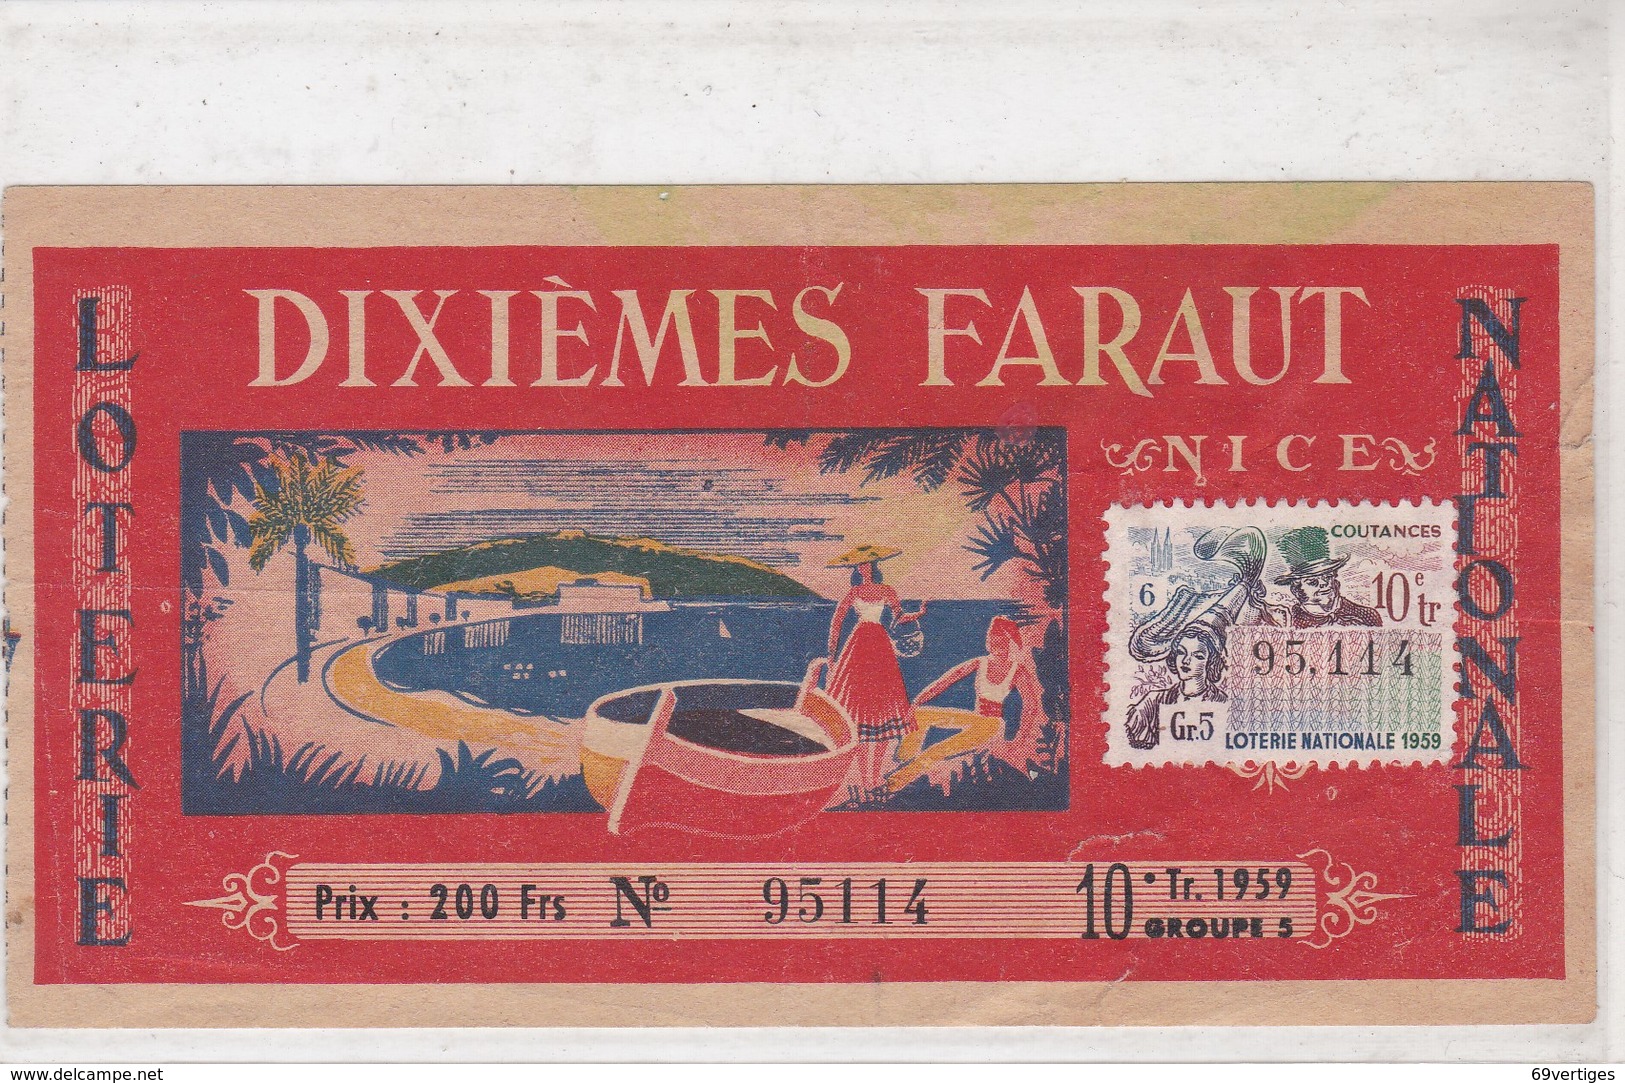 DIXIEMES FARAUT, NICE, 1959 - Billets De Loterie